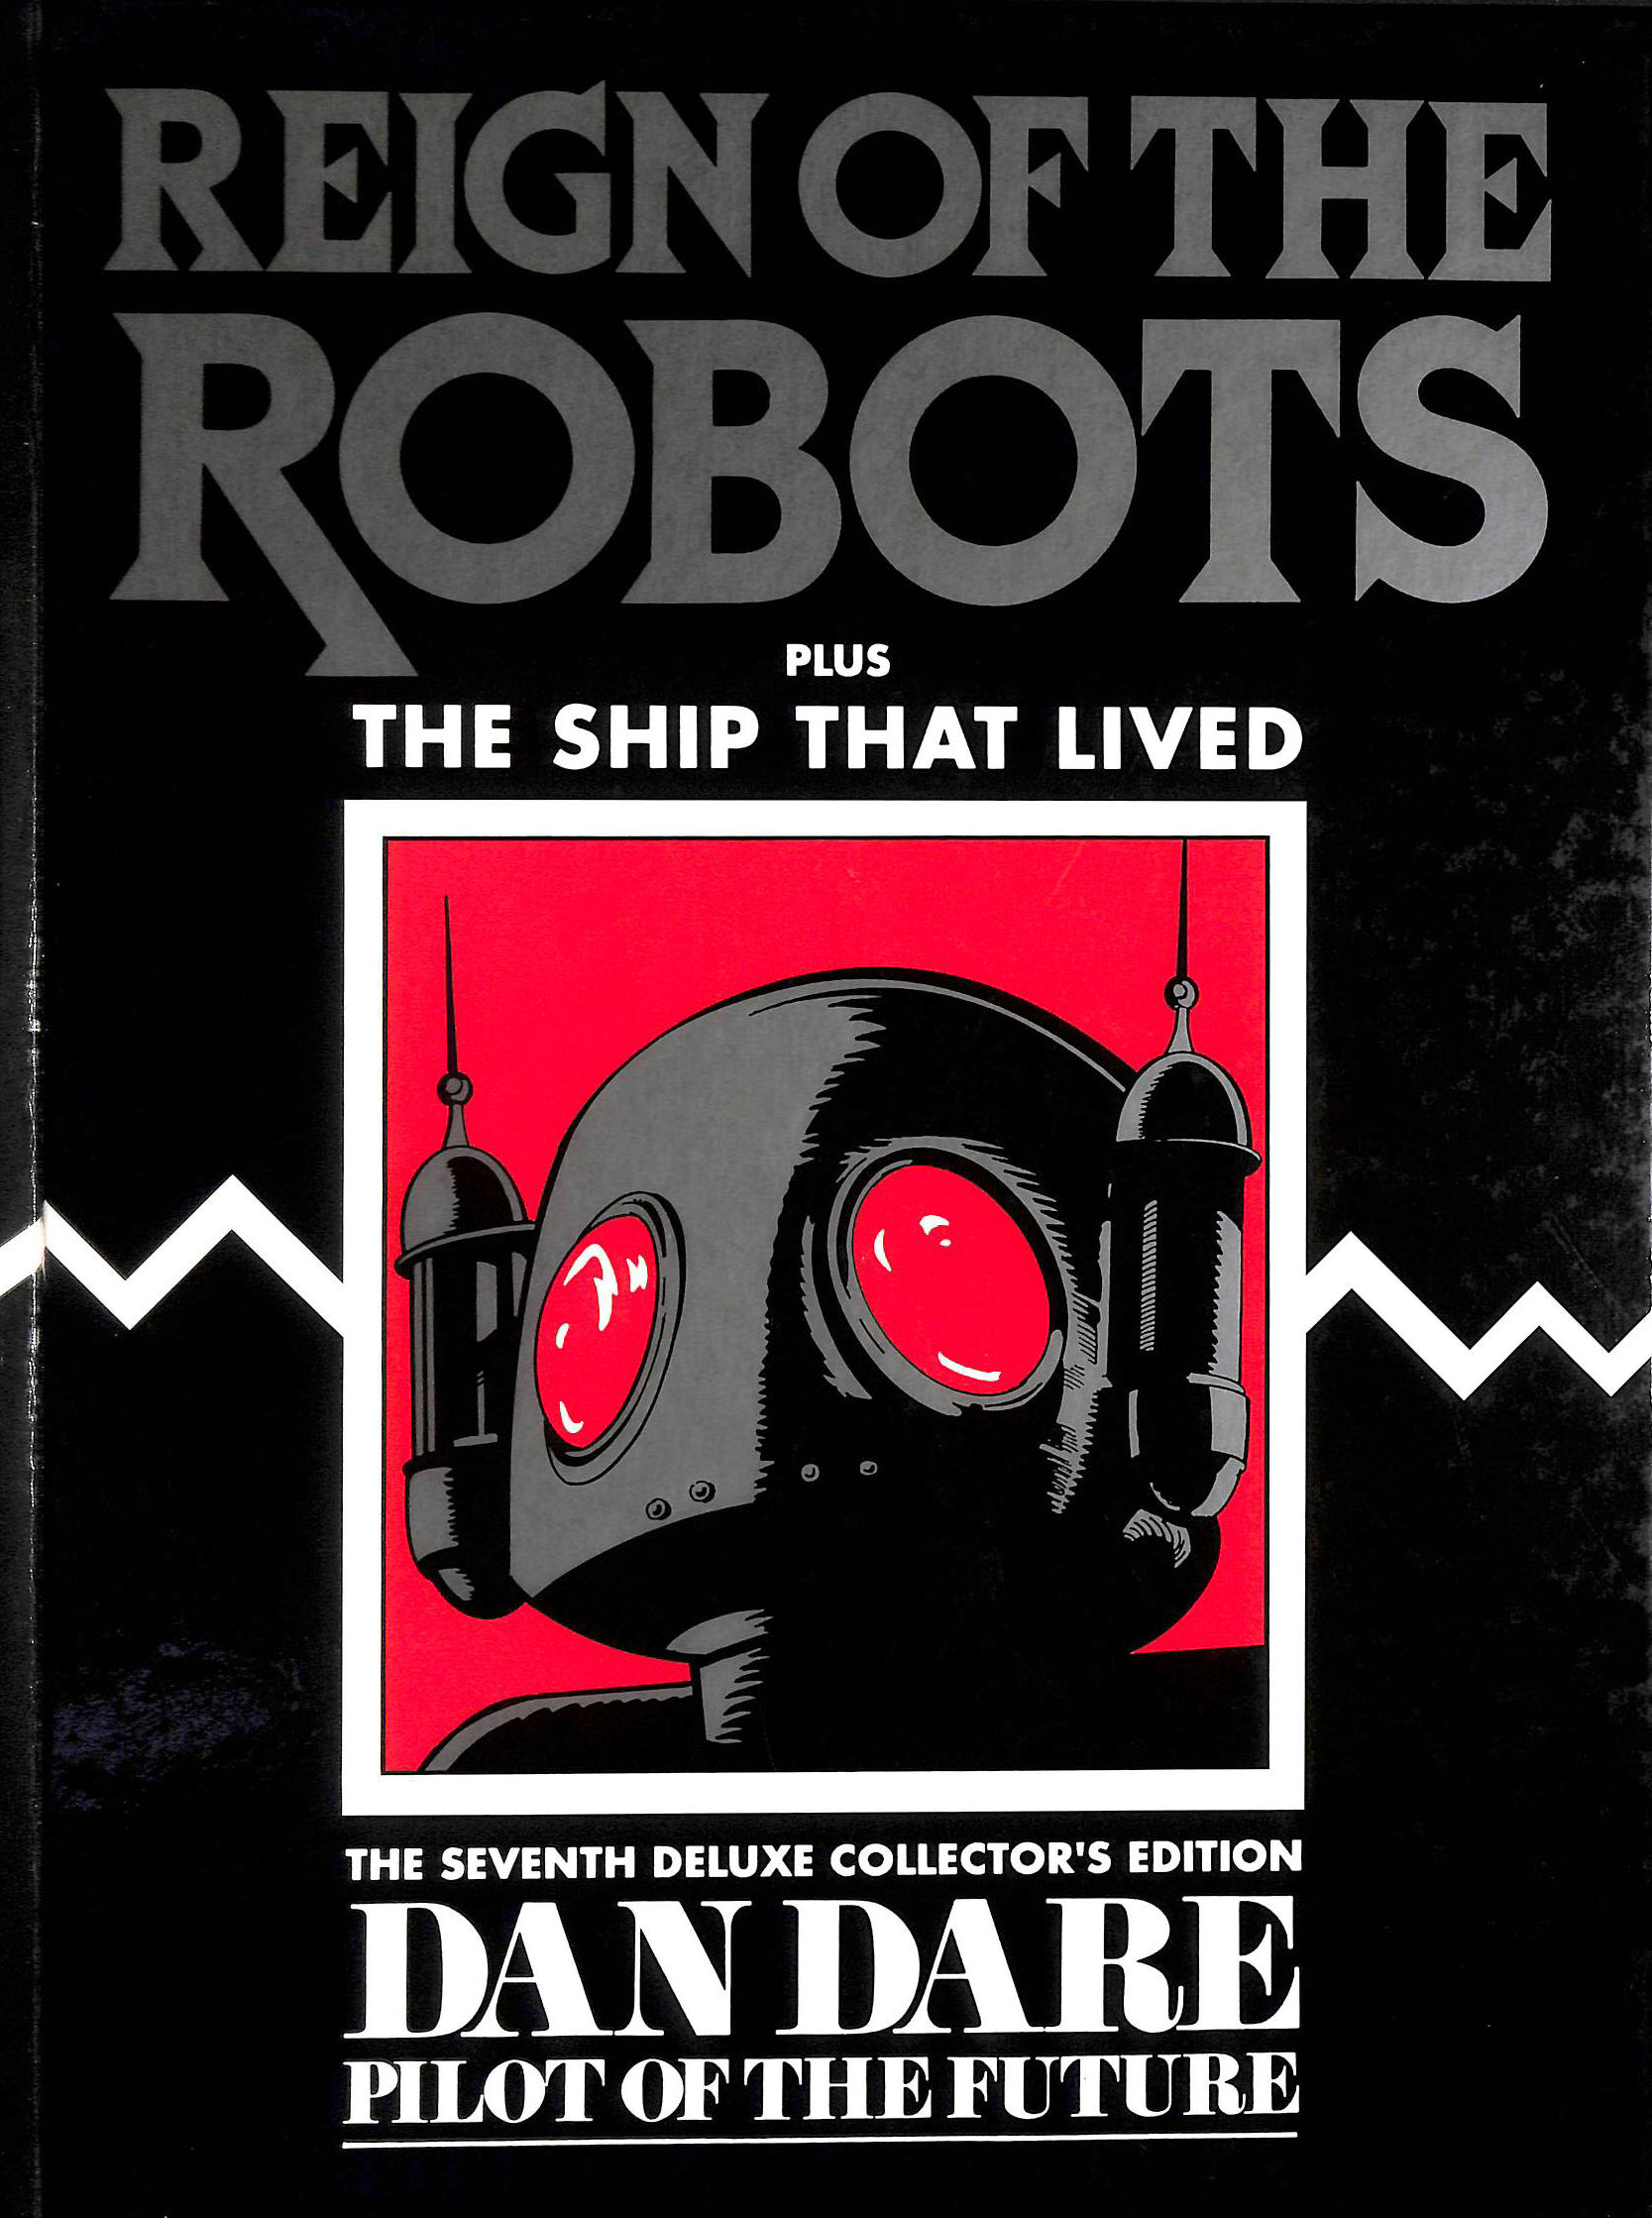  - Dan Dare: Reign of the Robots v. 7 (Dan Dare Deluxe Collector's Editions)